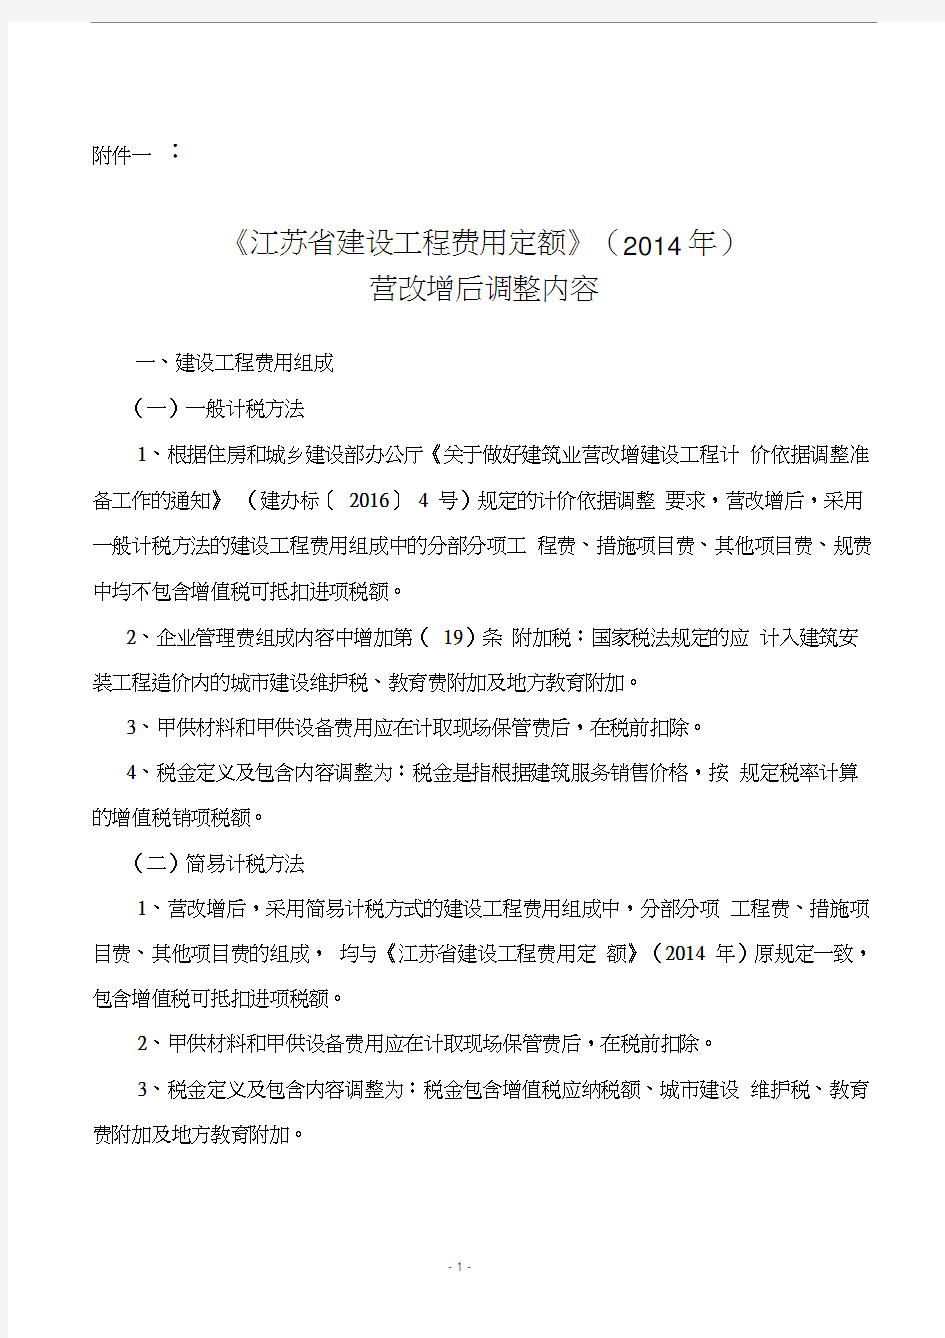 《江苏省建设工程费用定额》(2014年)营改增后调整内容